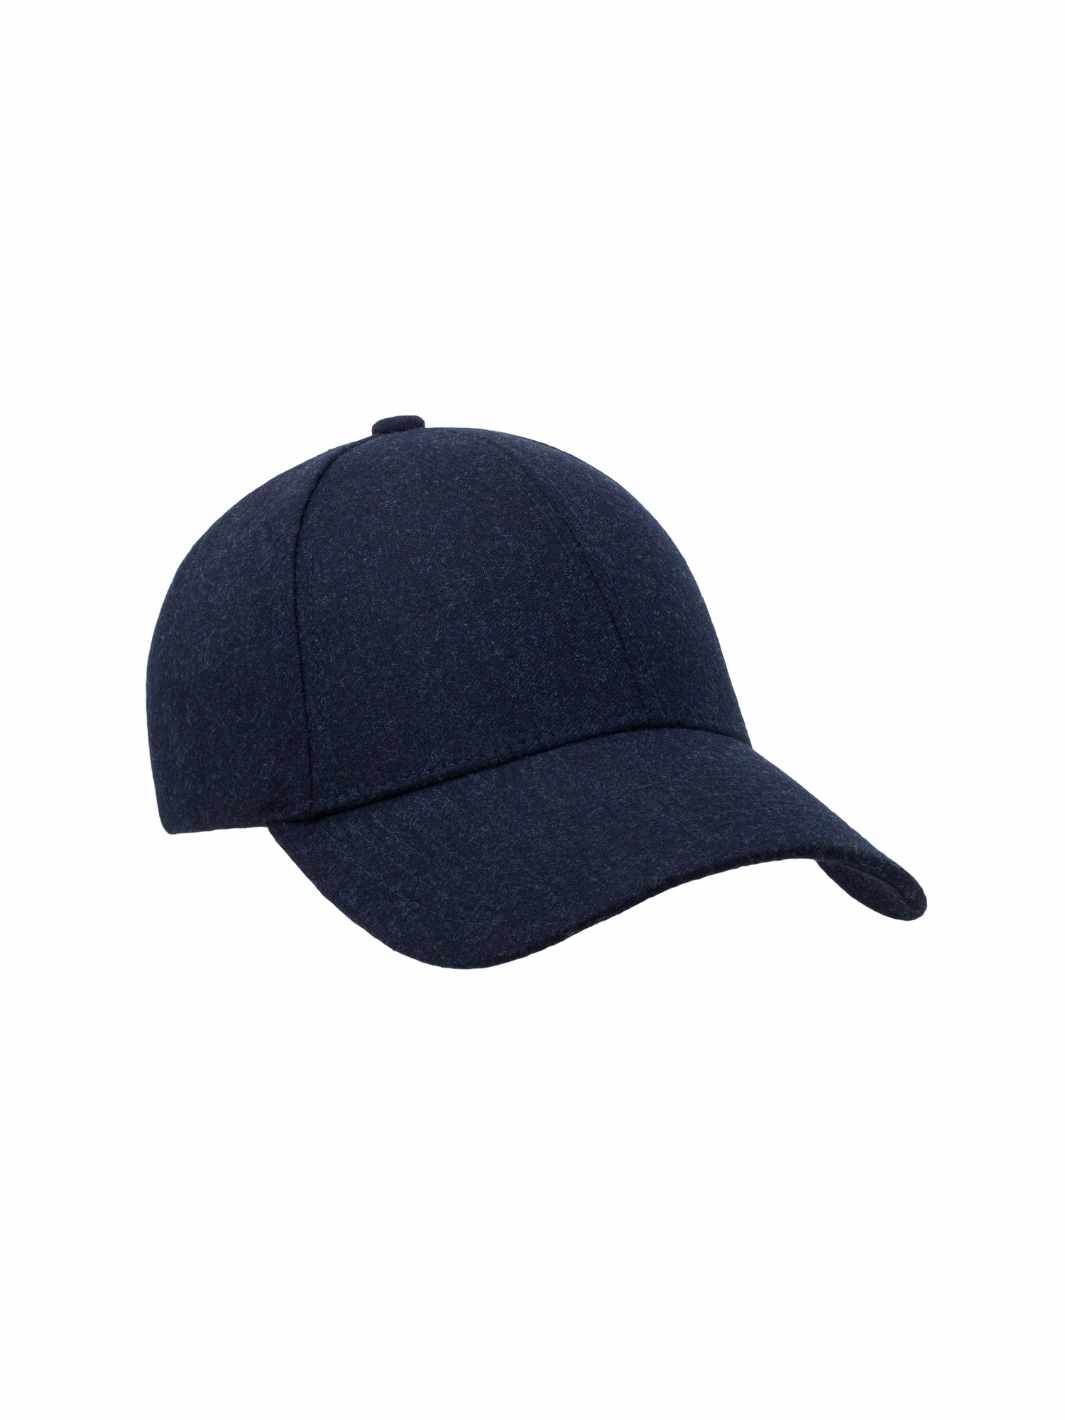 Varsity Headwear Accessories Cap | Dark Navy Wool Dark Navy